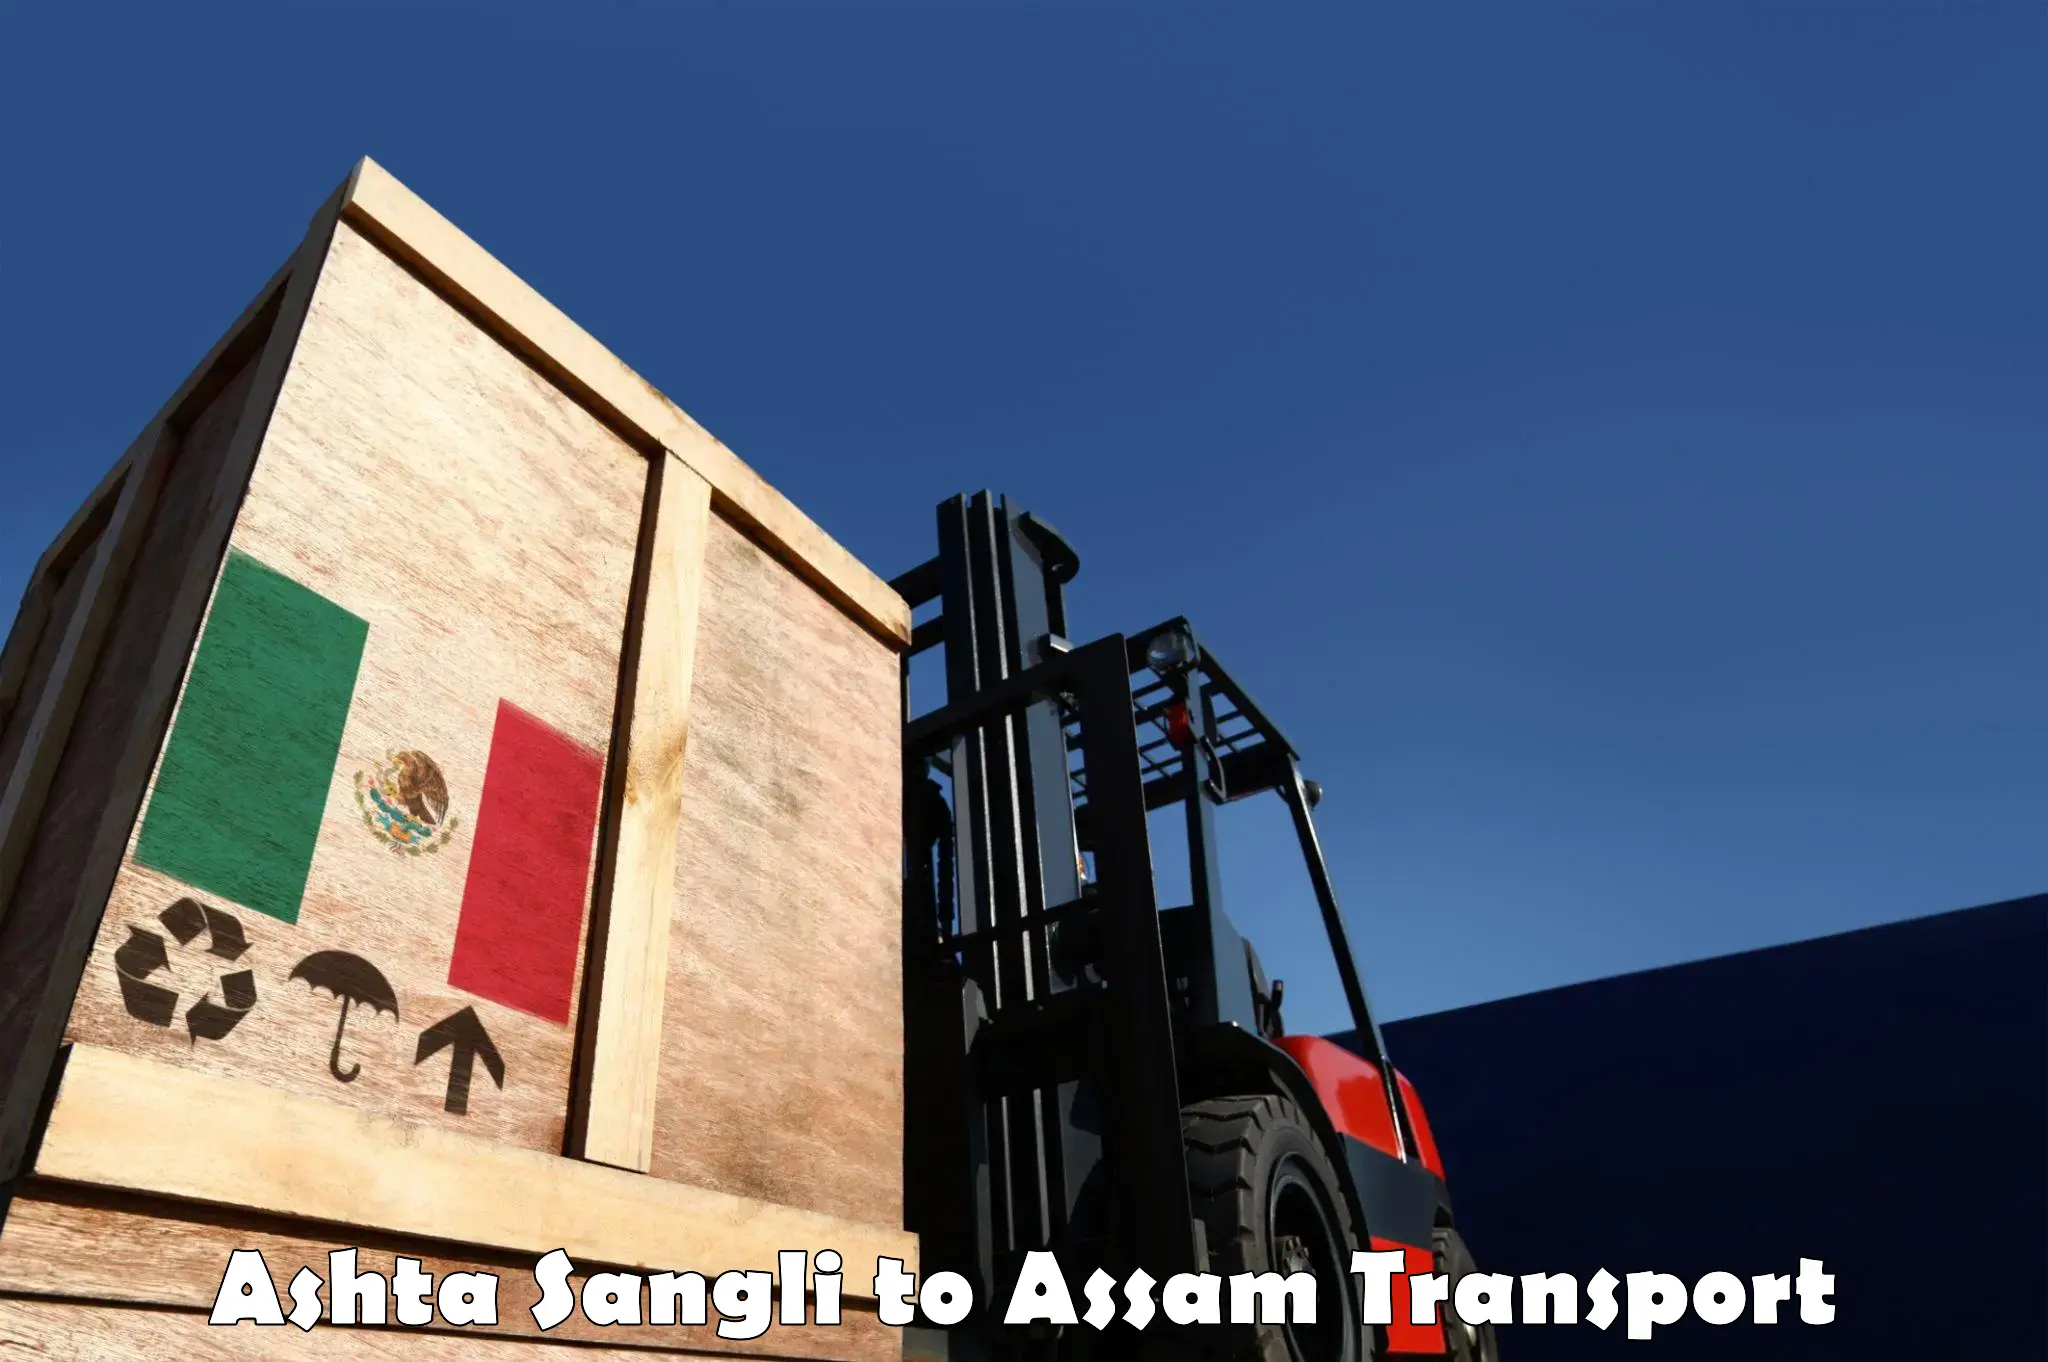 Truck transport companies in India Ashta Sangli to IIIT Guwahati